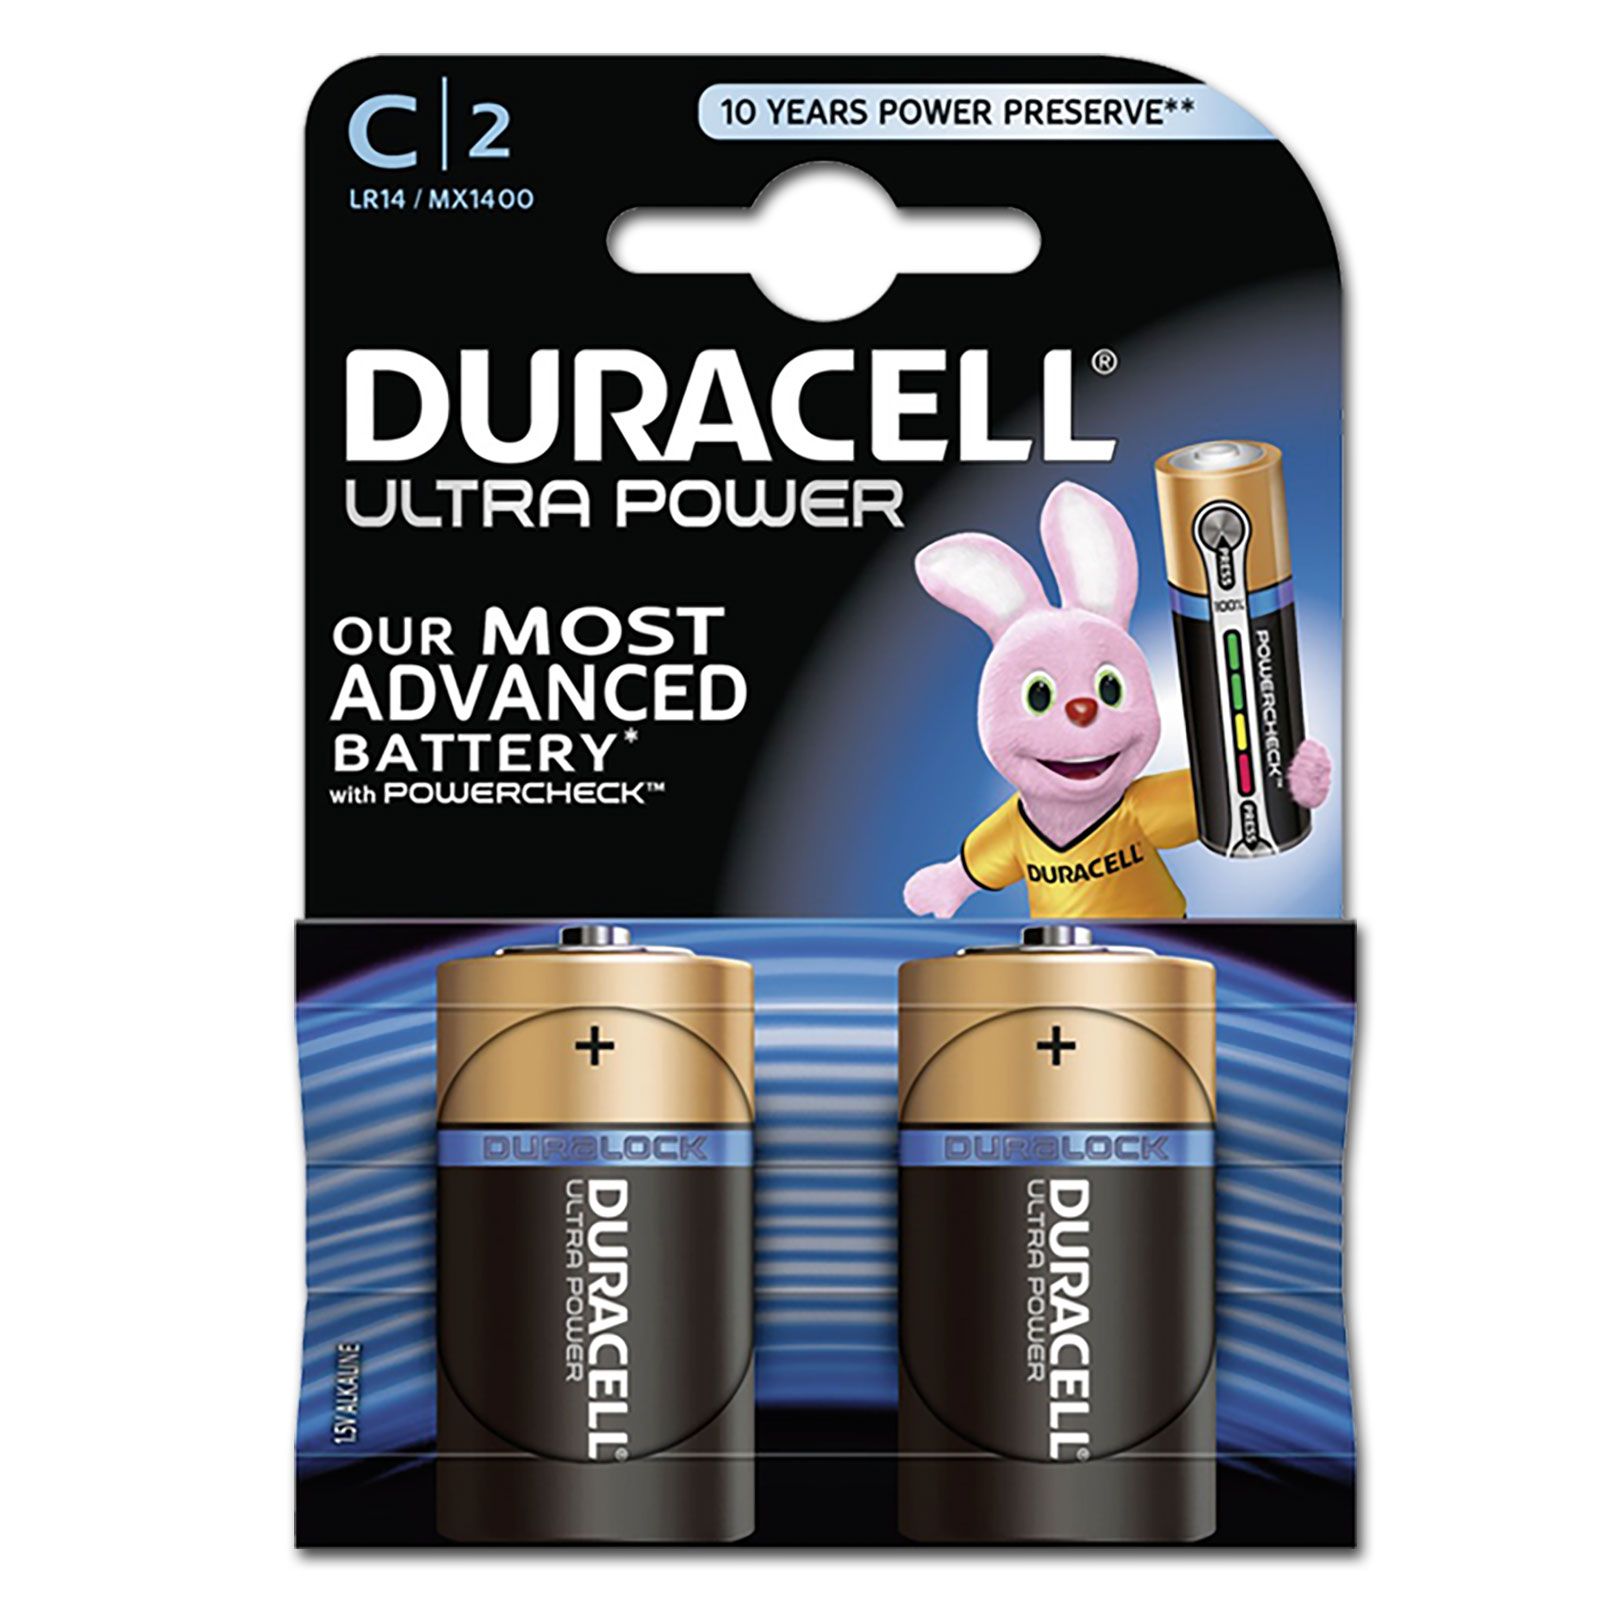 DURACELL Ultra Power MX1400 C BL2